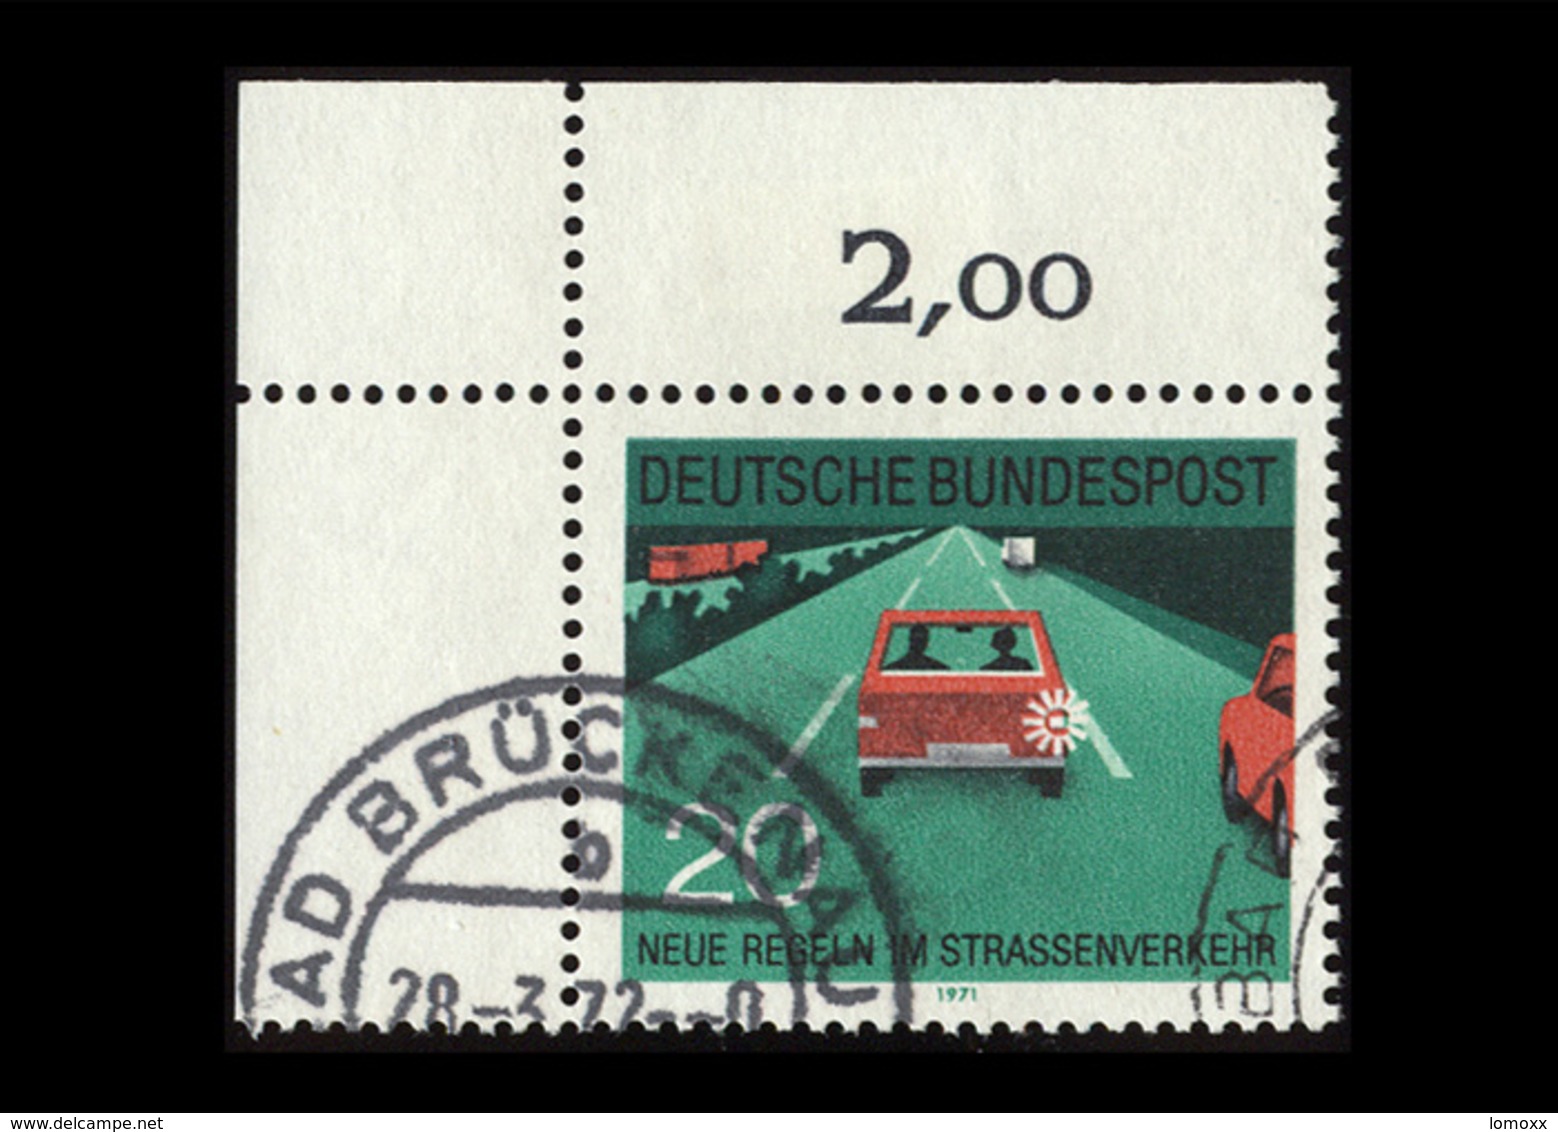 BRD 1971, Michel-Nr. 672, Neue Regeln Im Straßenverkehr, 20 Pf., Eckrand Oben Links, Gestempelt - Gebraucht